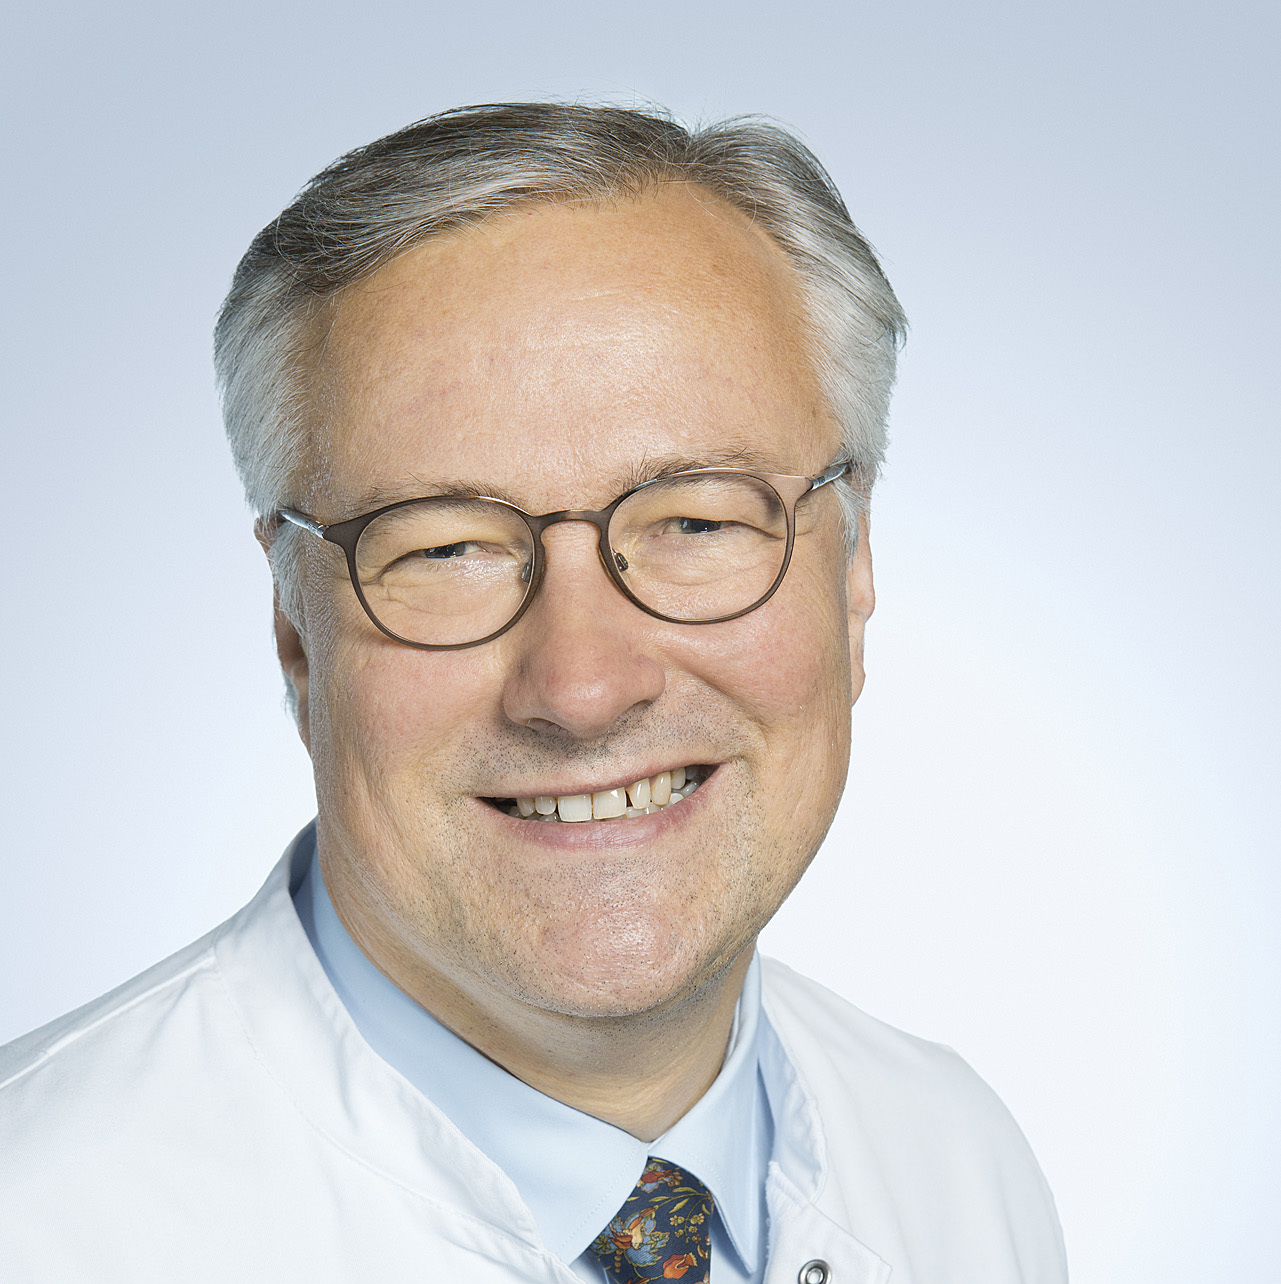 FOCUS: Prof. Walter ist Top-Mediziner für diabetische Augenerkrankungen